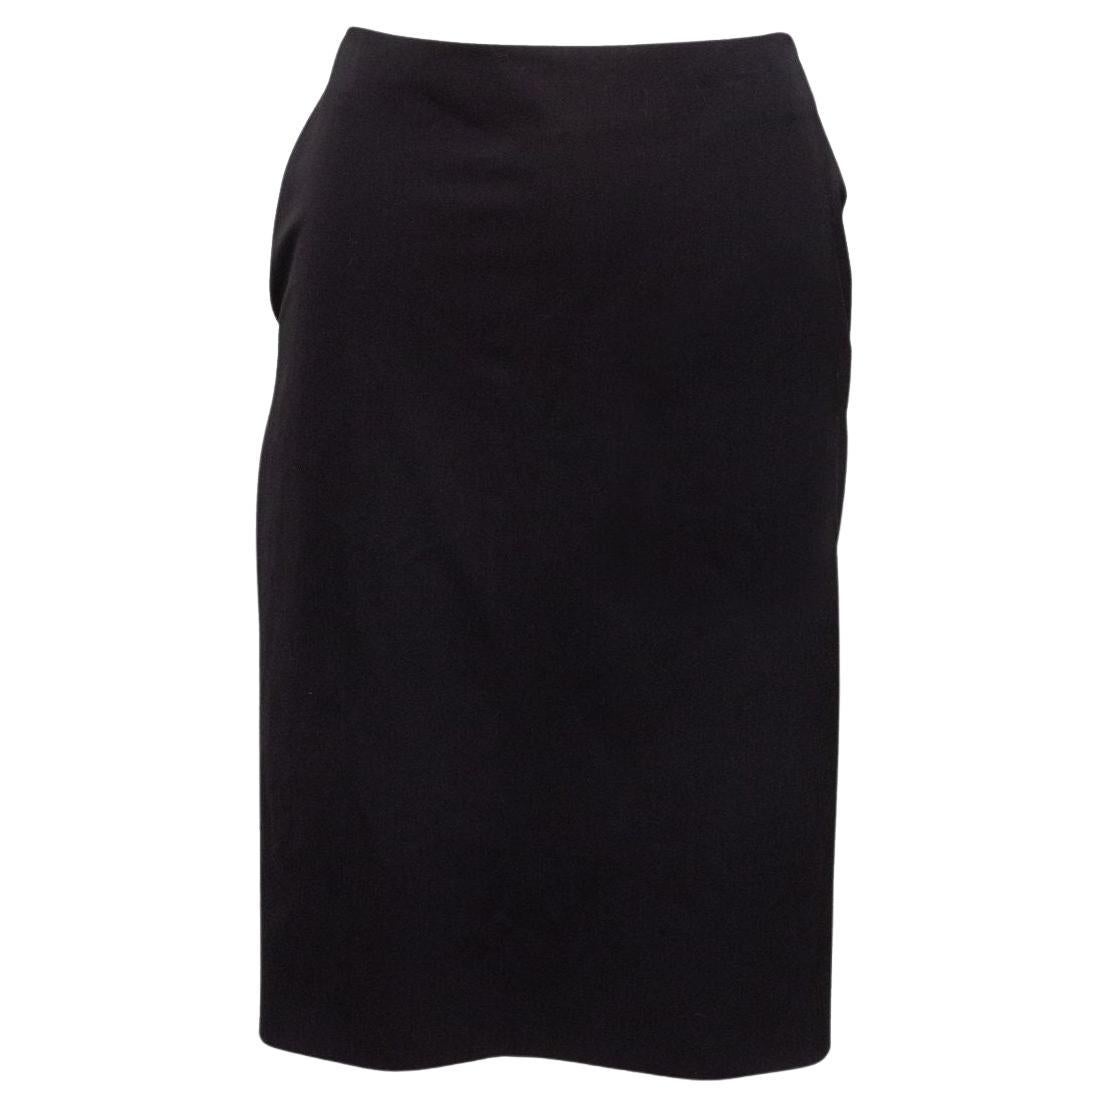 Jean Paul Gaultier Femme Black Wool Skirt